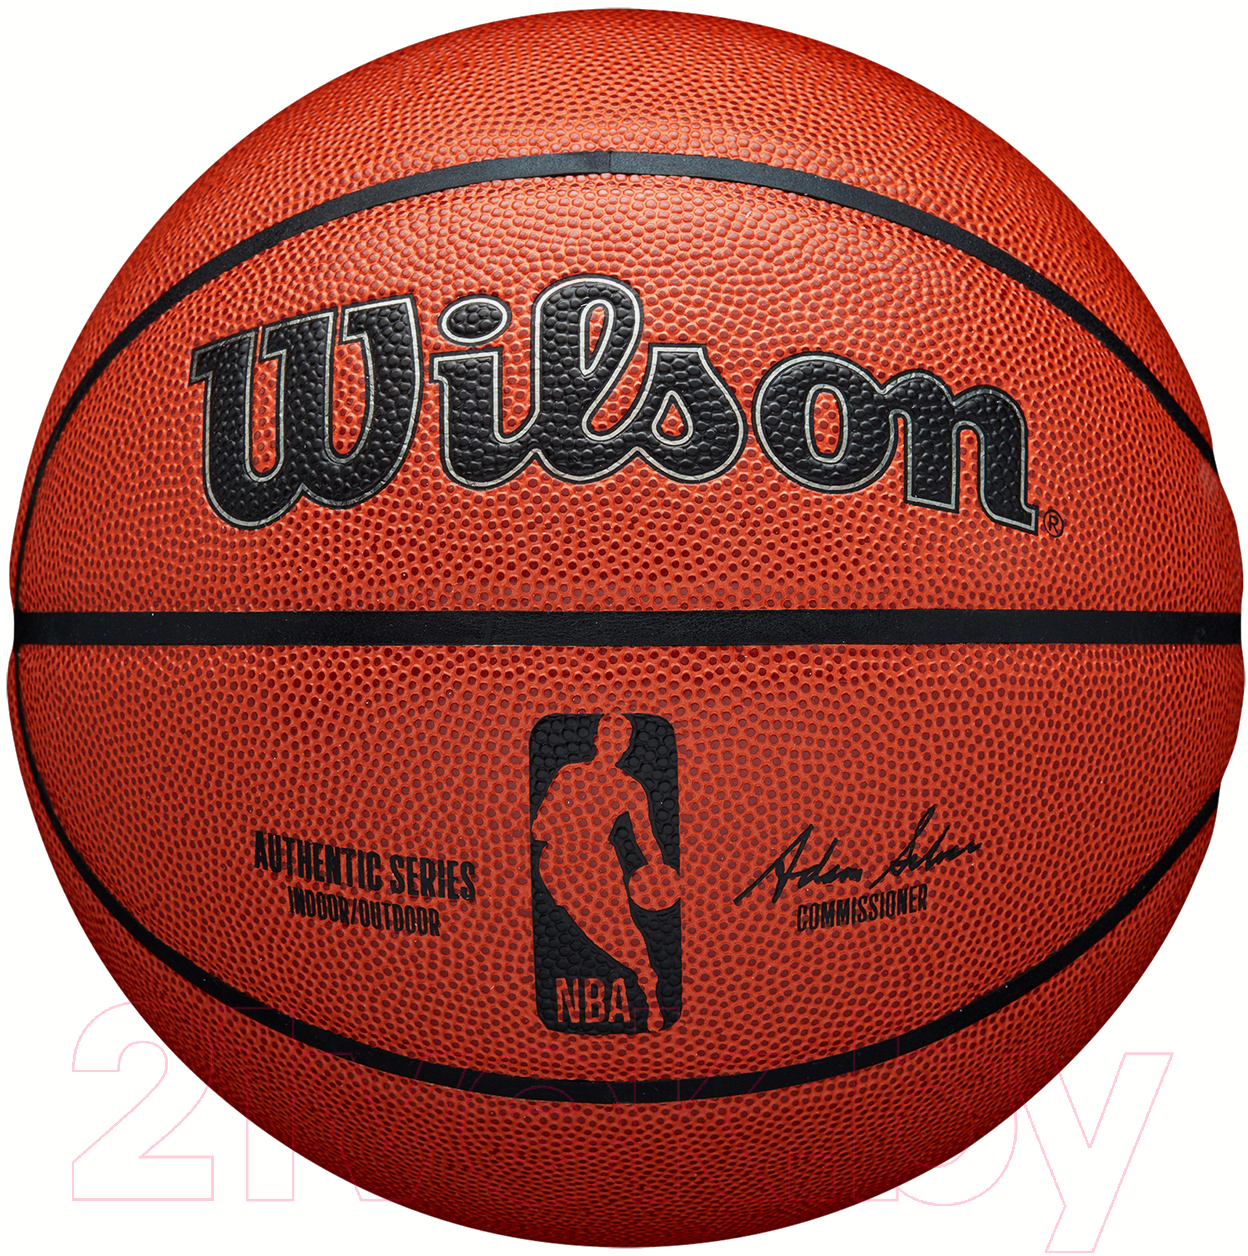 Баскетбольный мяч Wilson Nba Authentic / WTB7300XB07